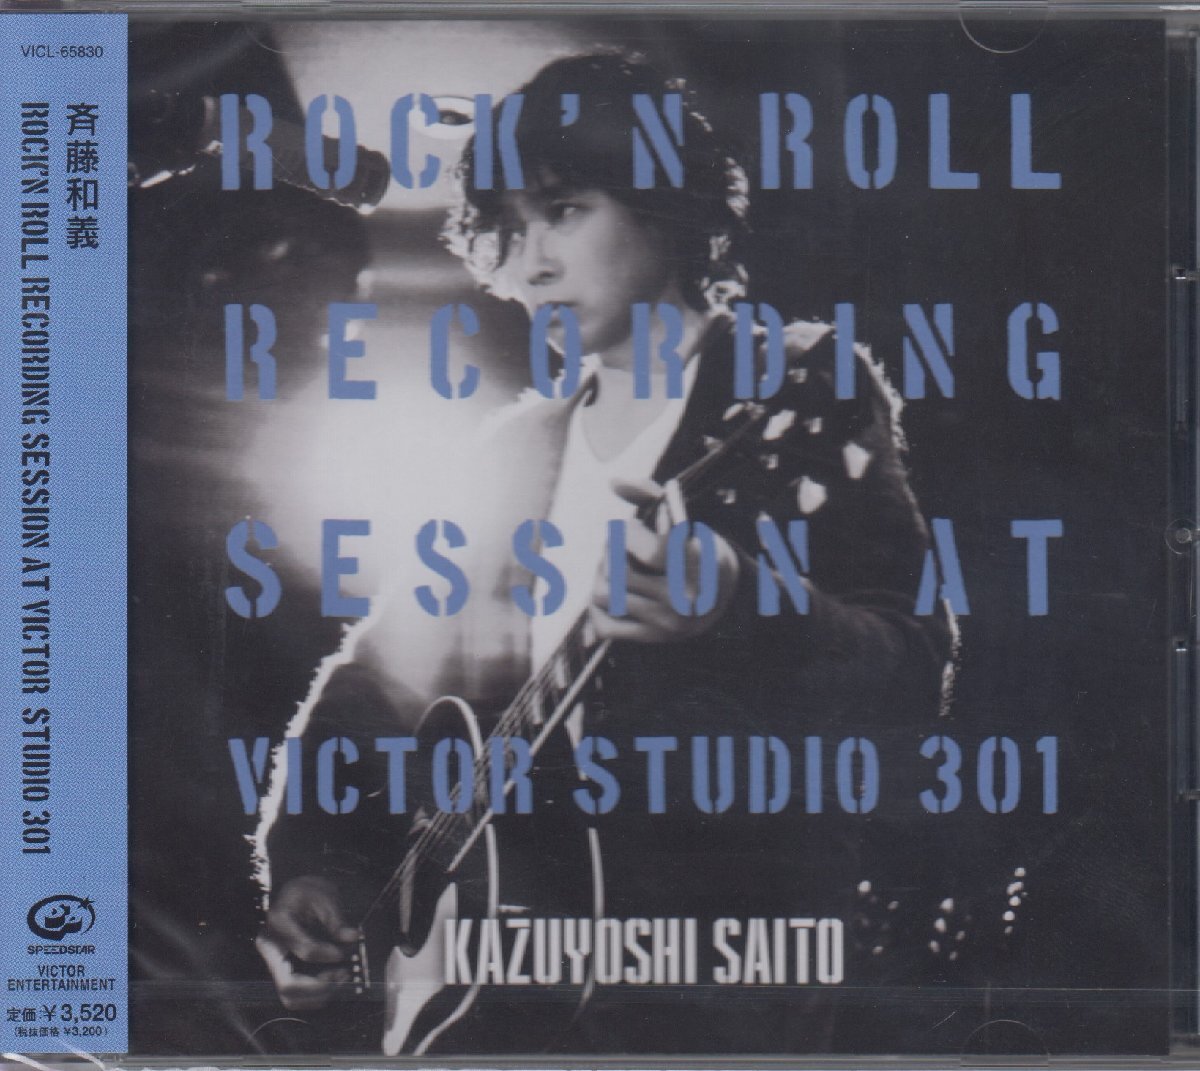 斉藤和義 / ROCK'N ROLL Recording Session at Victor Studio 301 【通常盤】/VICL-65830_画像1